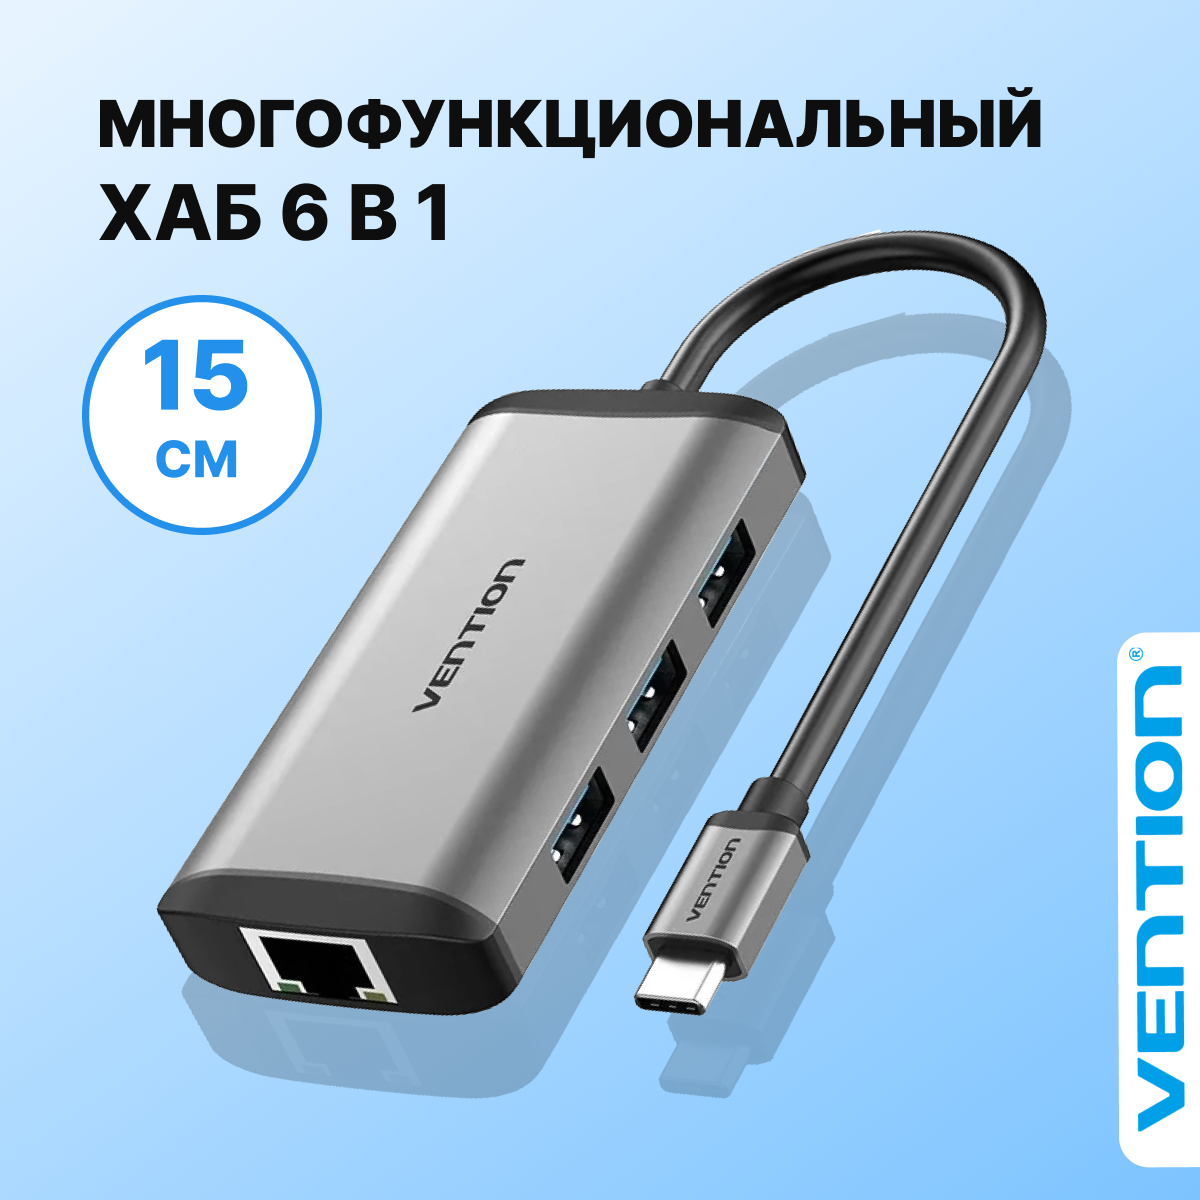 Vention Мультифункциональный хаб 6 в 1 USB Type C, сплиттер, переходник для периферийных устройств, арт CNCHB